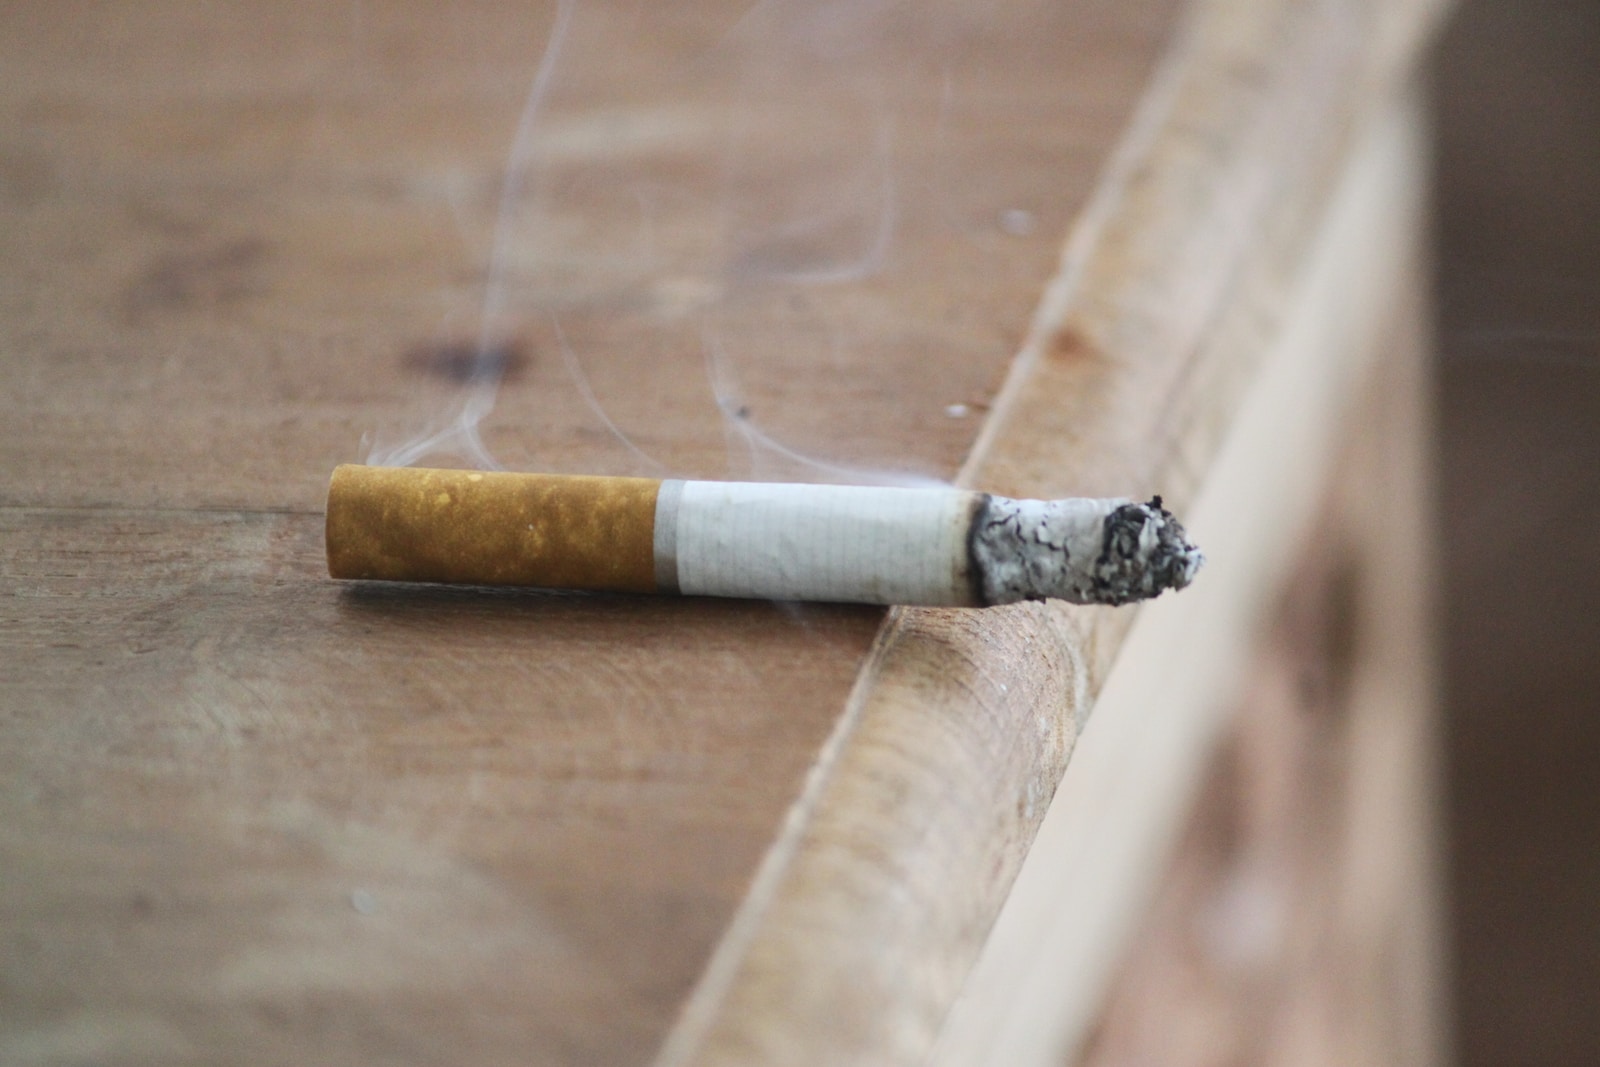 white and brown cigarette stick